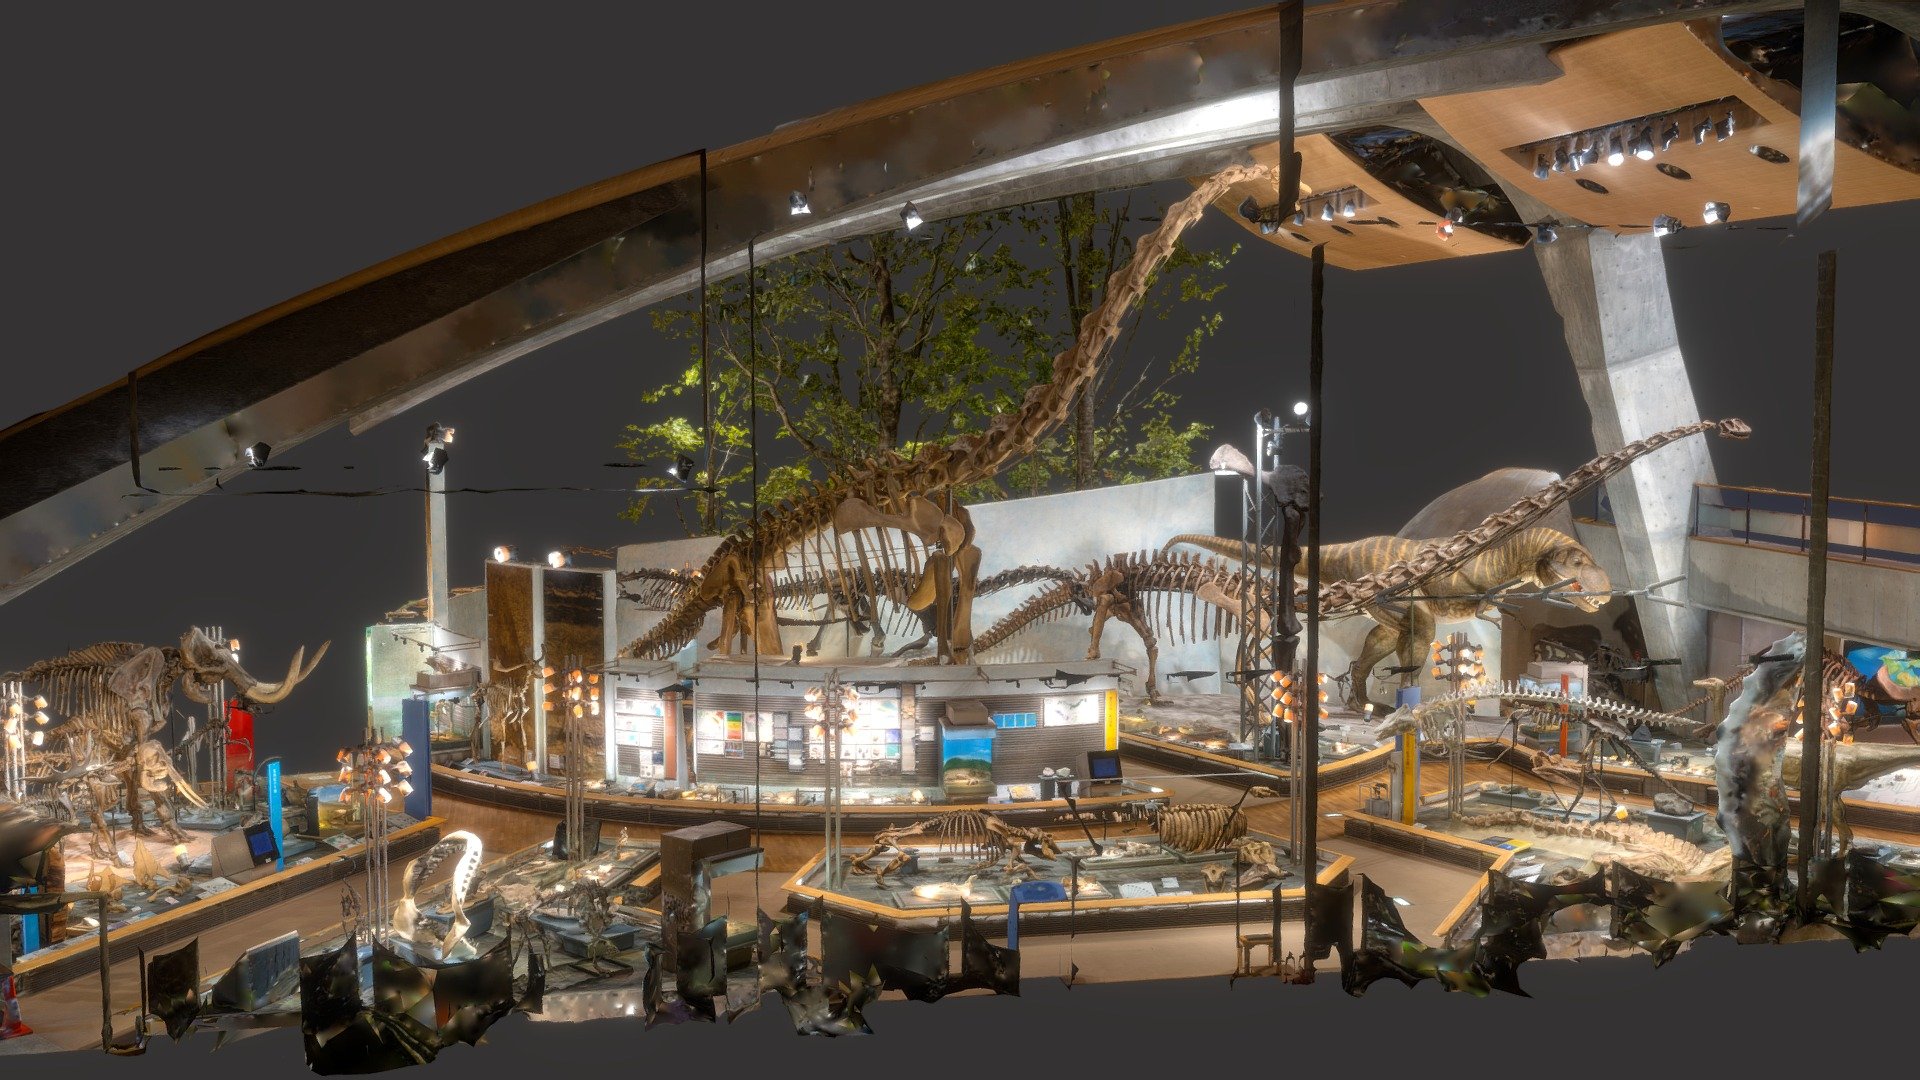 群馬県立自然史博物館 - Gunma Museum of Natural History - 3D model 